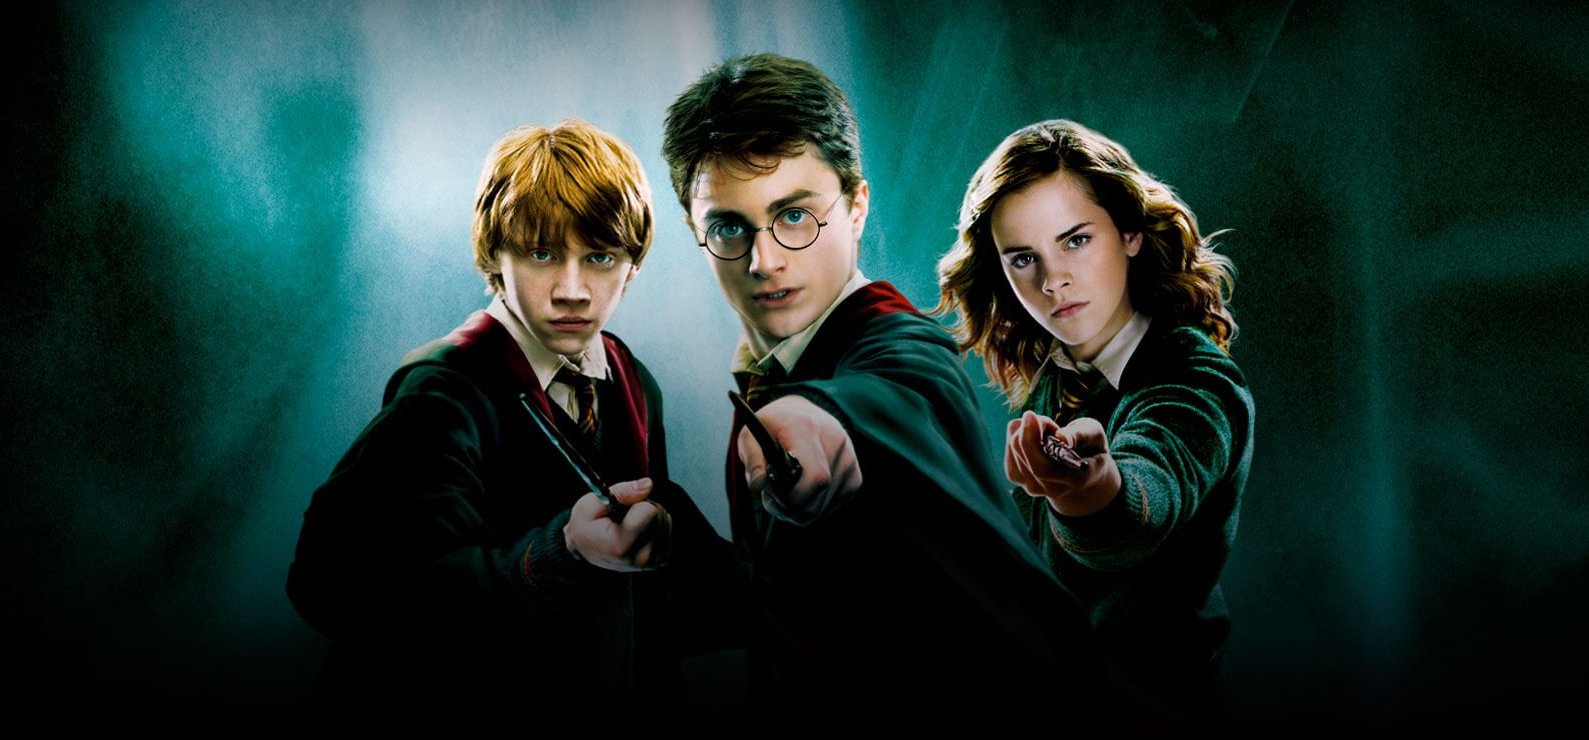 Sorozat készül a Harry Potterből?